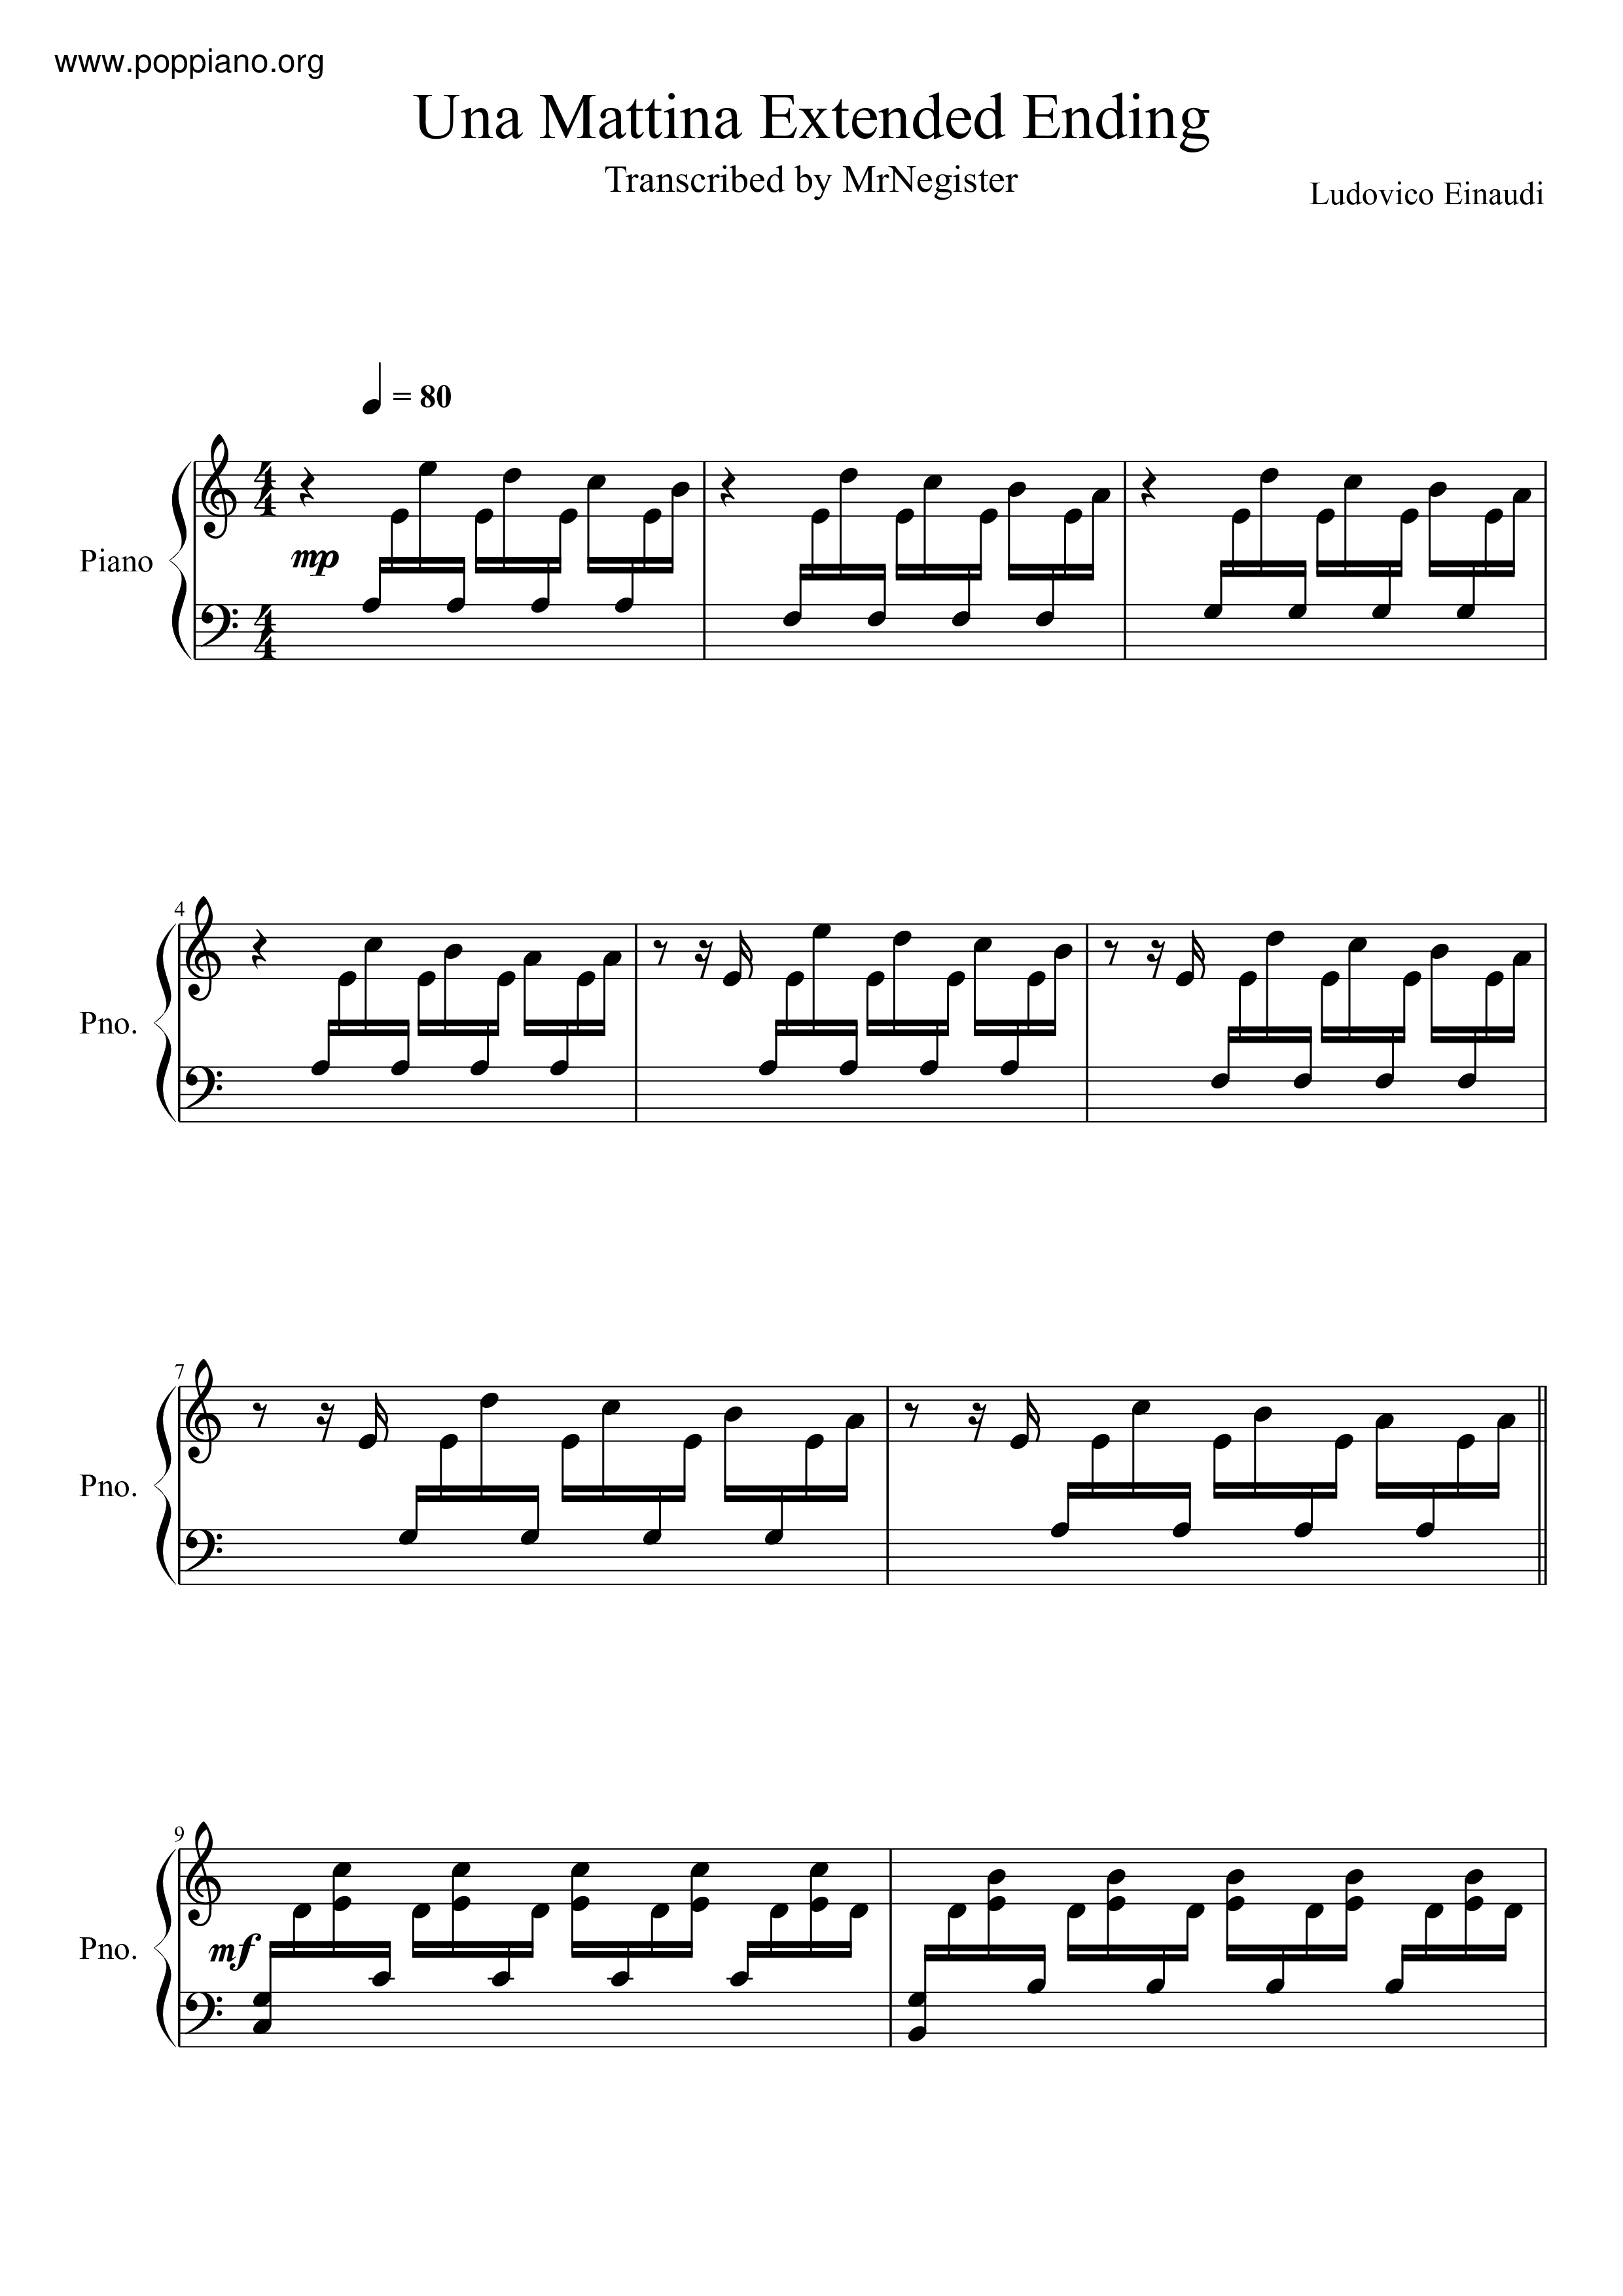 ☆ The Intouchables - Una Mattina - Music / Piano Score Free PDF Download - HK Pop Piano Academy ☆